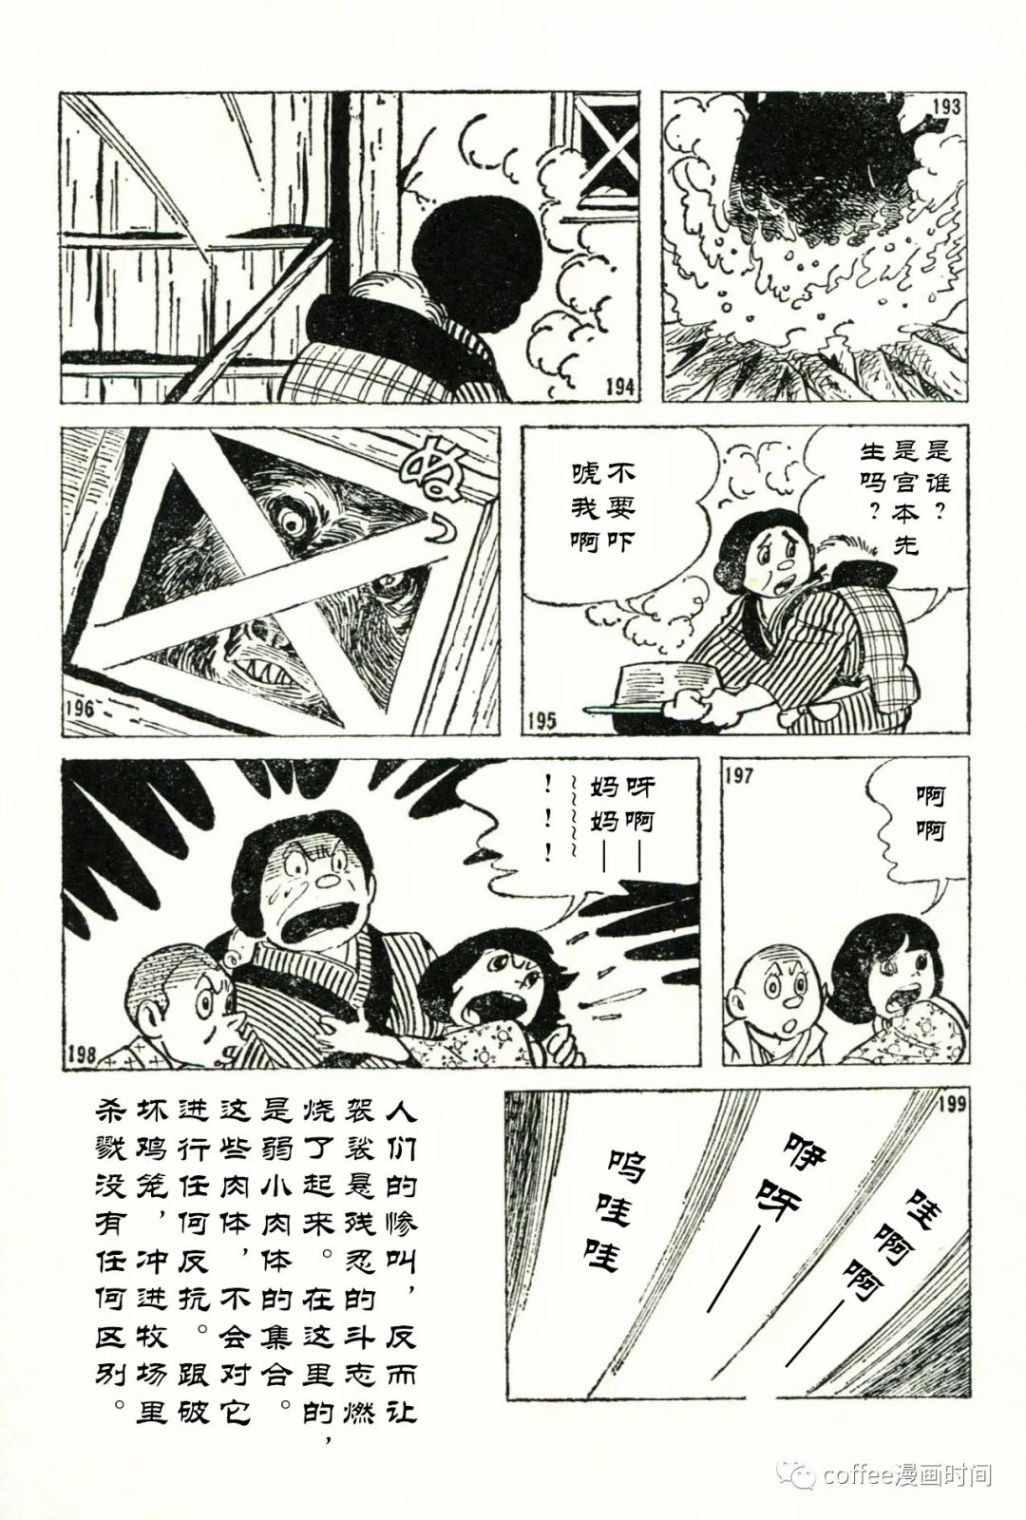 日本短篇漫畫傑作集 - 石川球太《棕熊風》 - 5